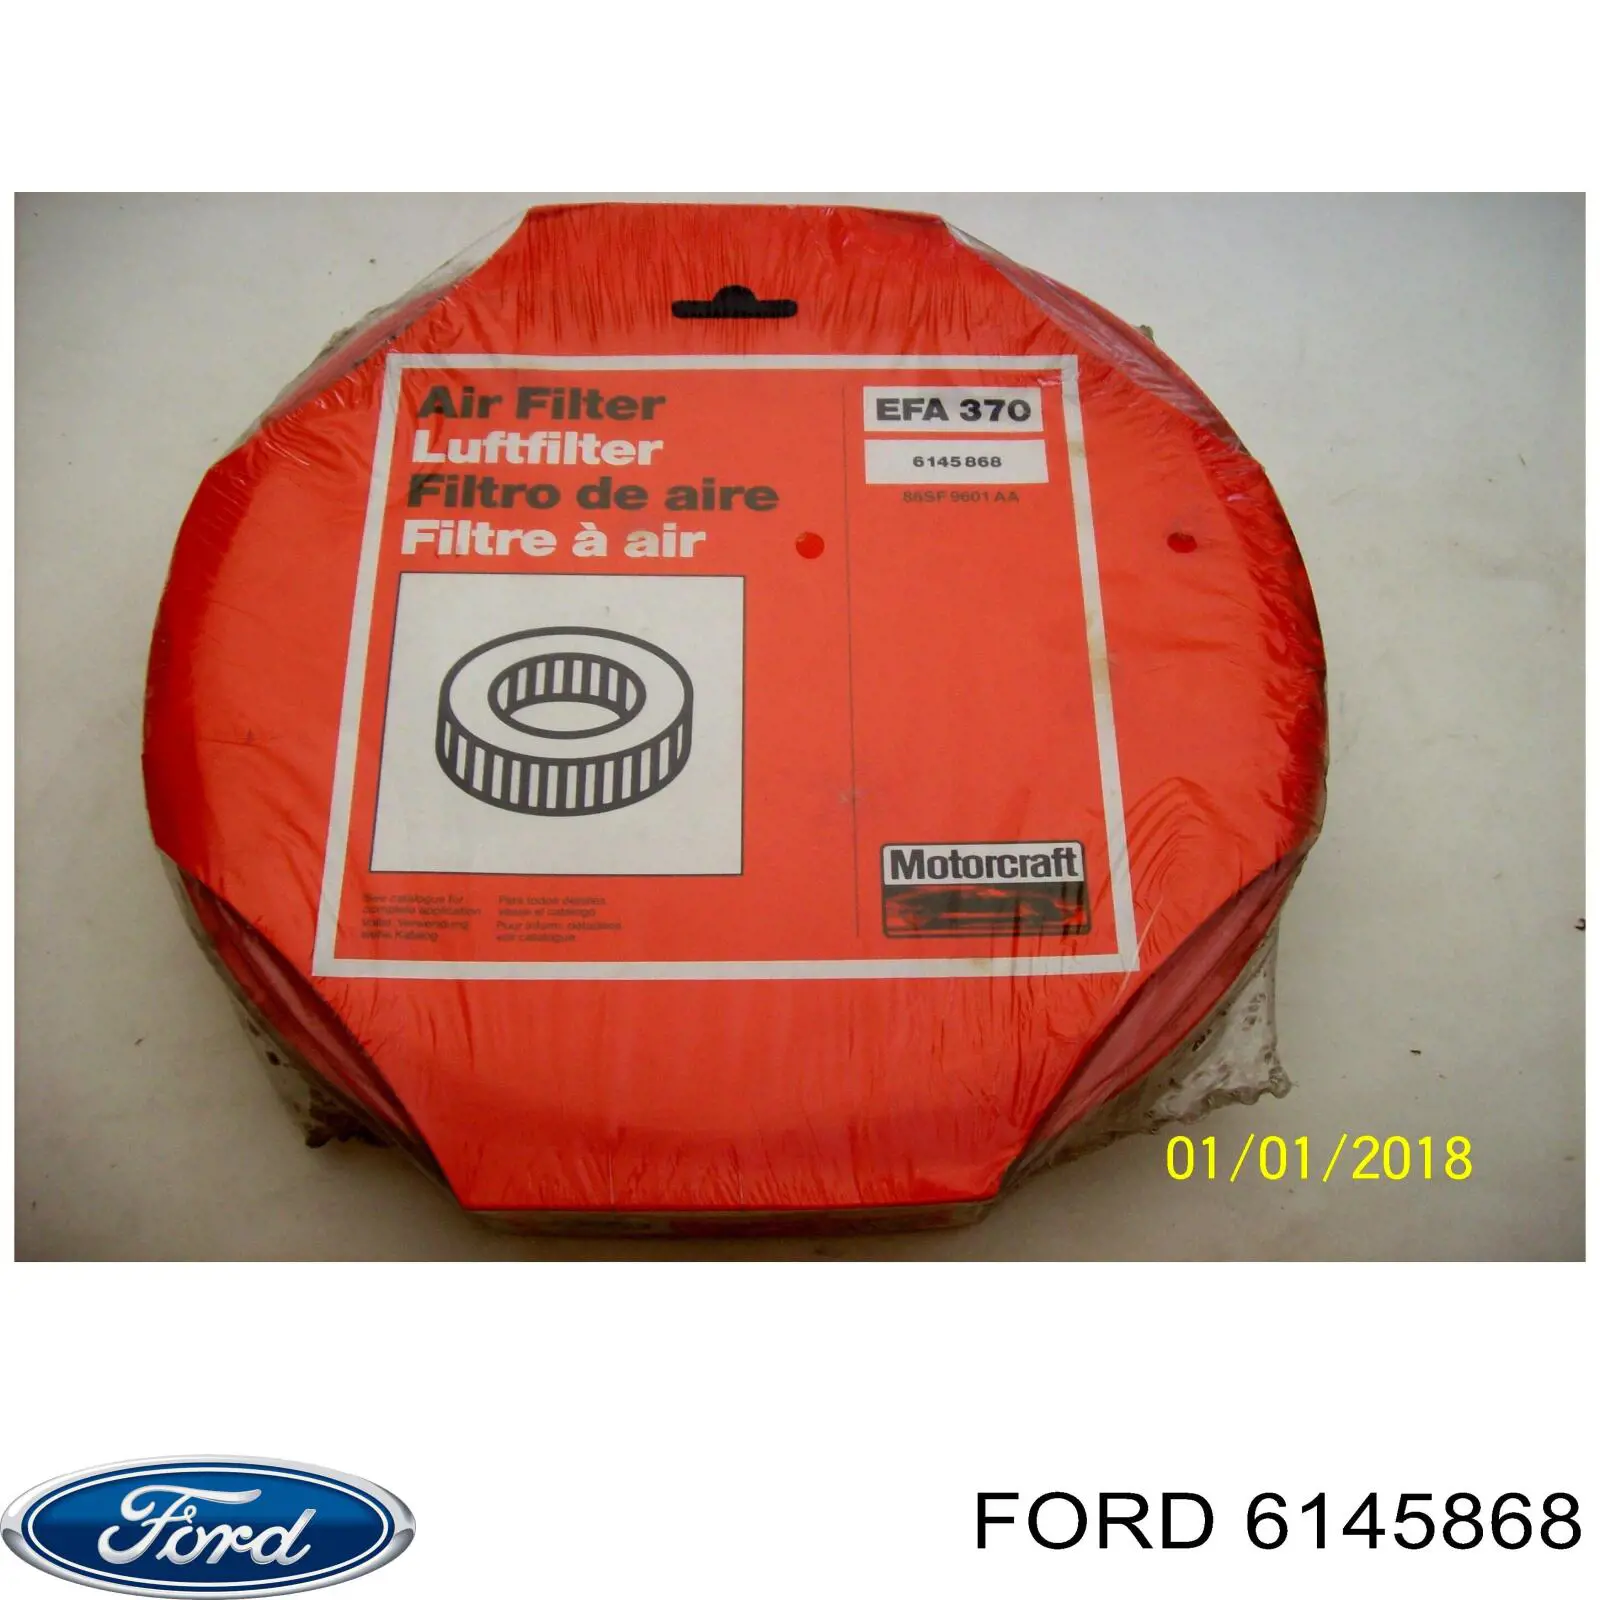 6145868 Ford filtro de aire